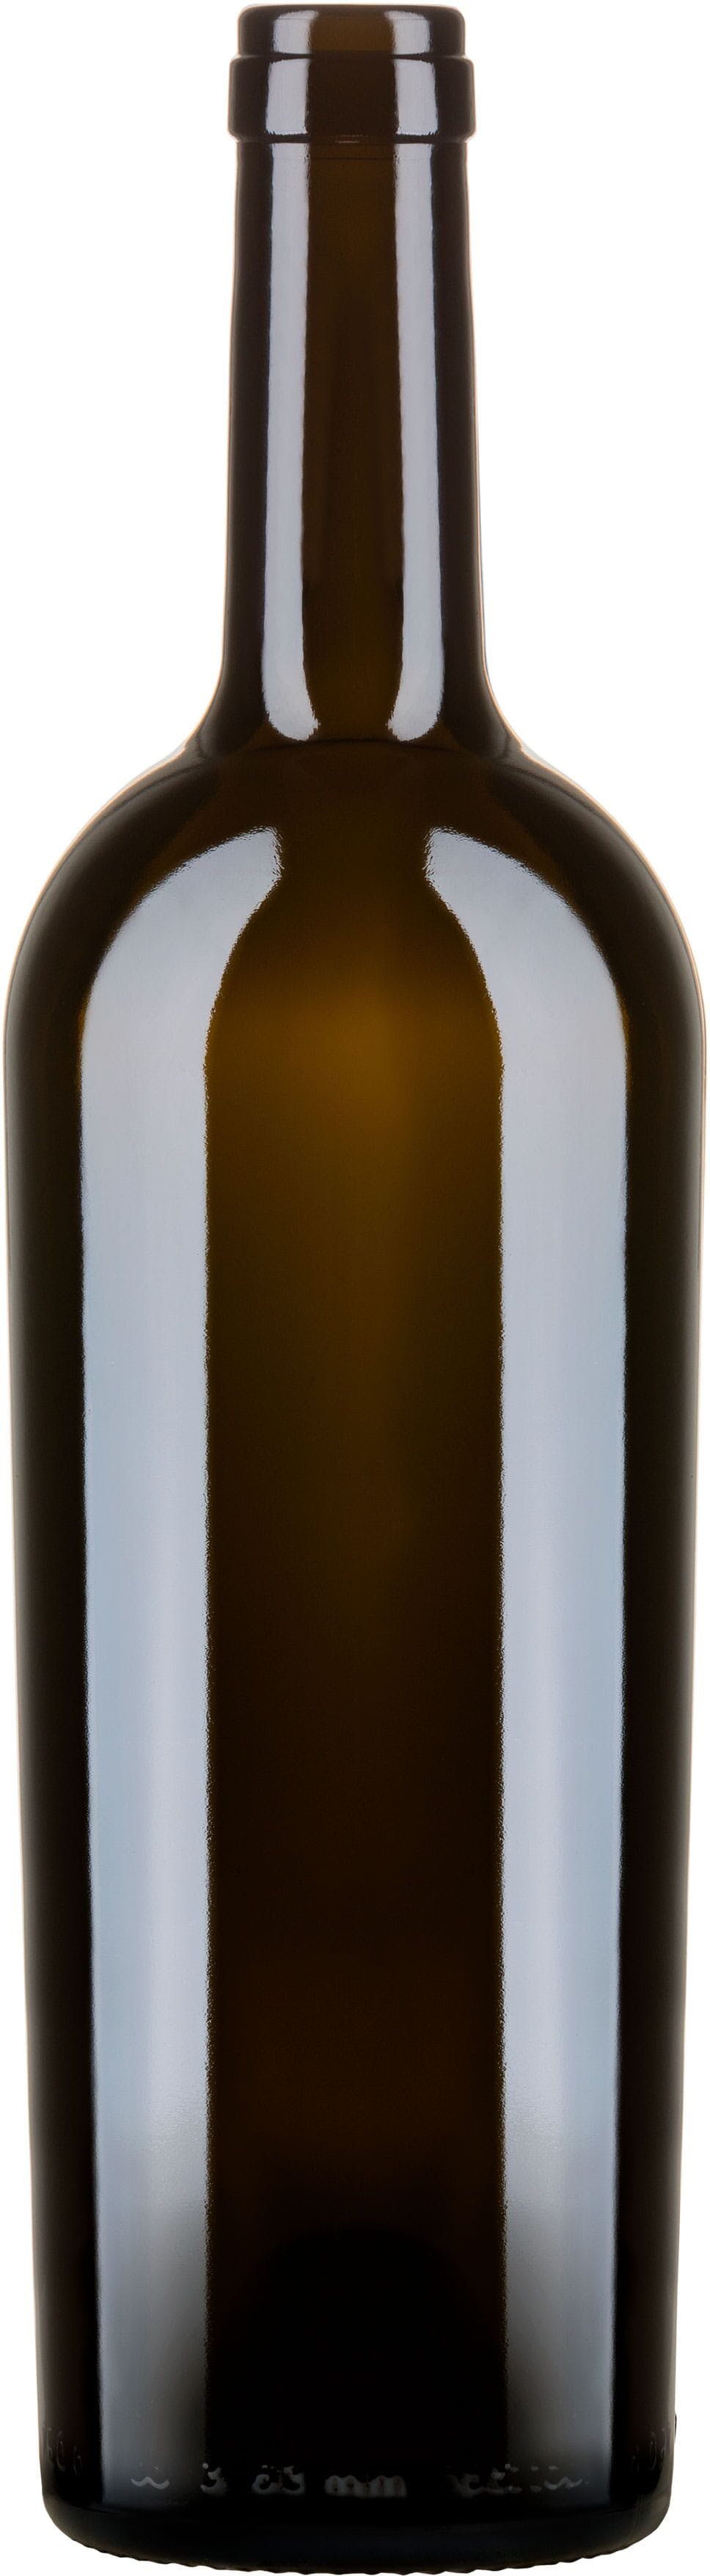 Bottle BORDOLESE  JUMBO 750 ml BG-Cork